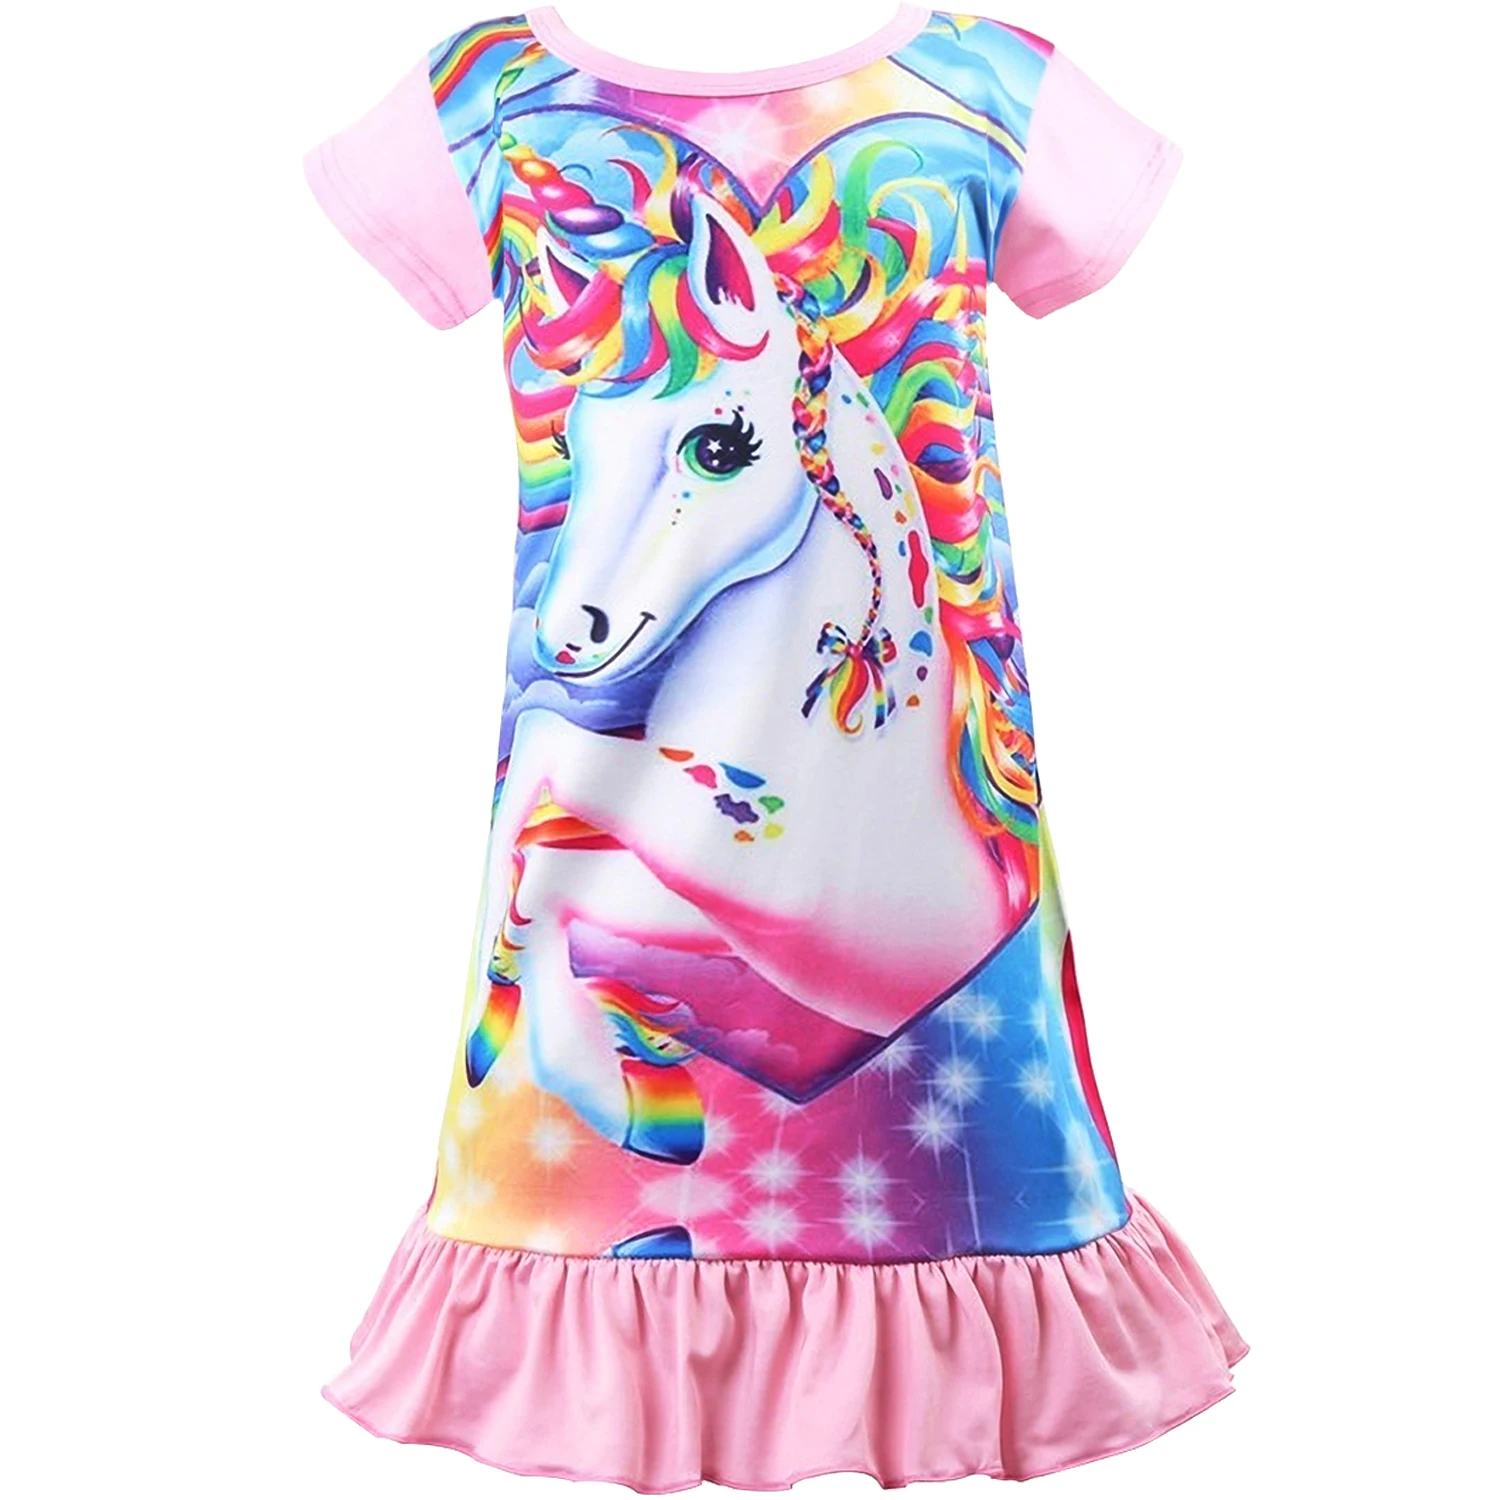 Детская ночная рубашка; Детские платья; ночное платье; Пижама; платье для сна; Пижама; платье принцессы с единорогом; модное летнее мягкое платье для девочек